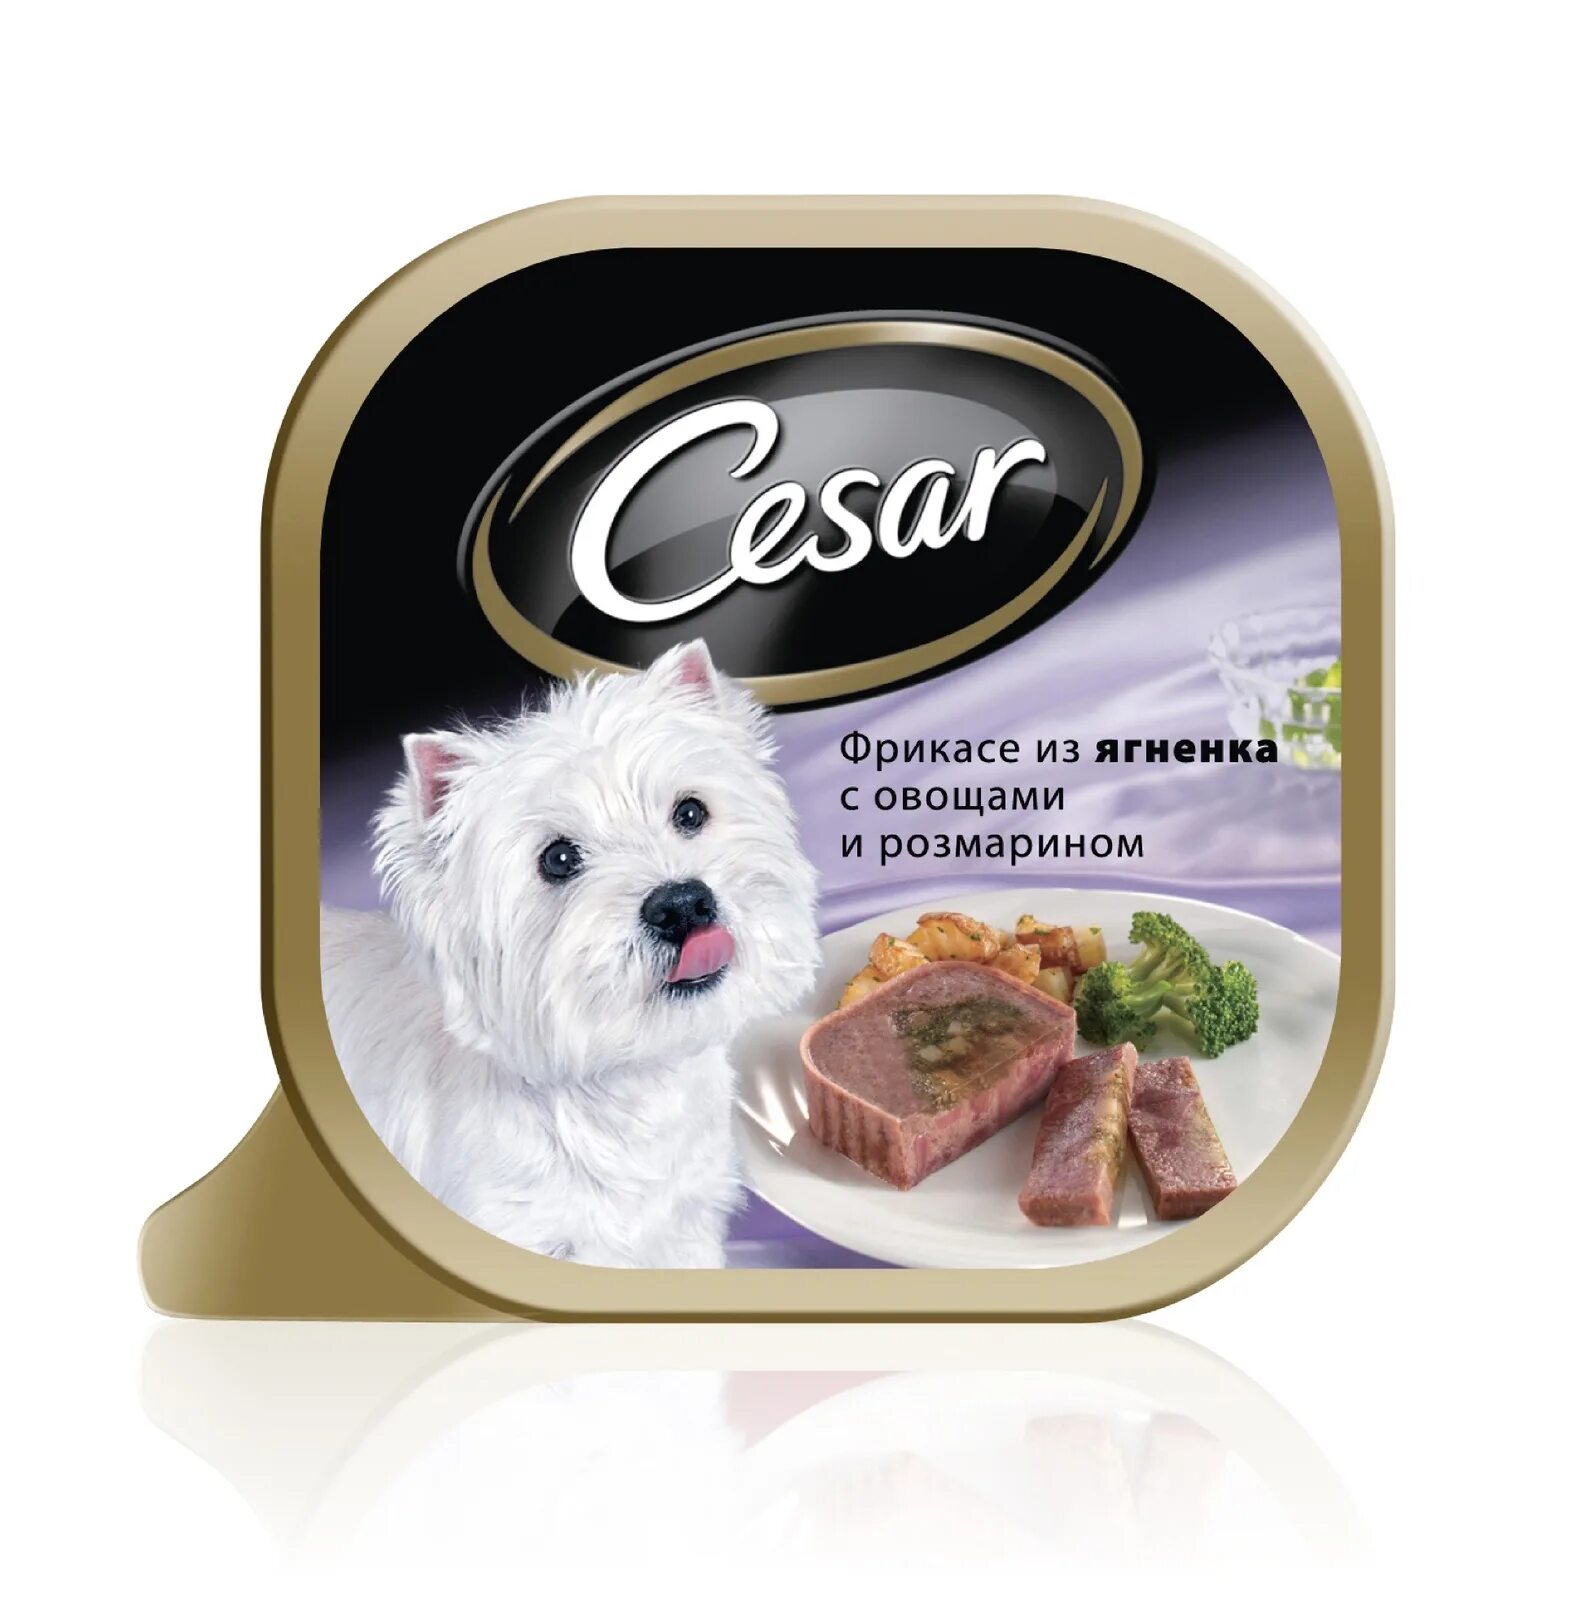 Влажный корм для собак Cesar из говядины с овощами 100г. Cesar консервы для собак. Влажный корм для собак Cesar.